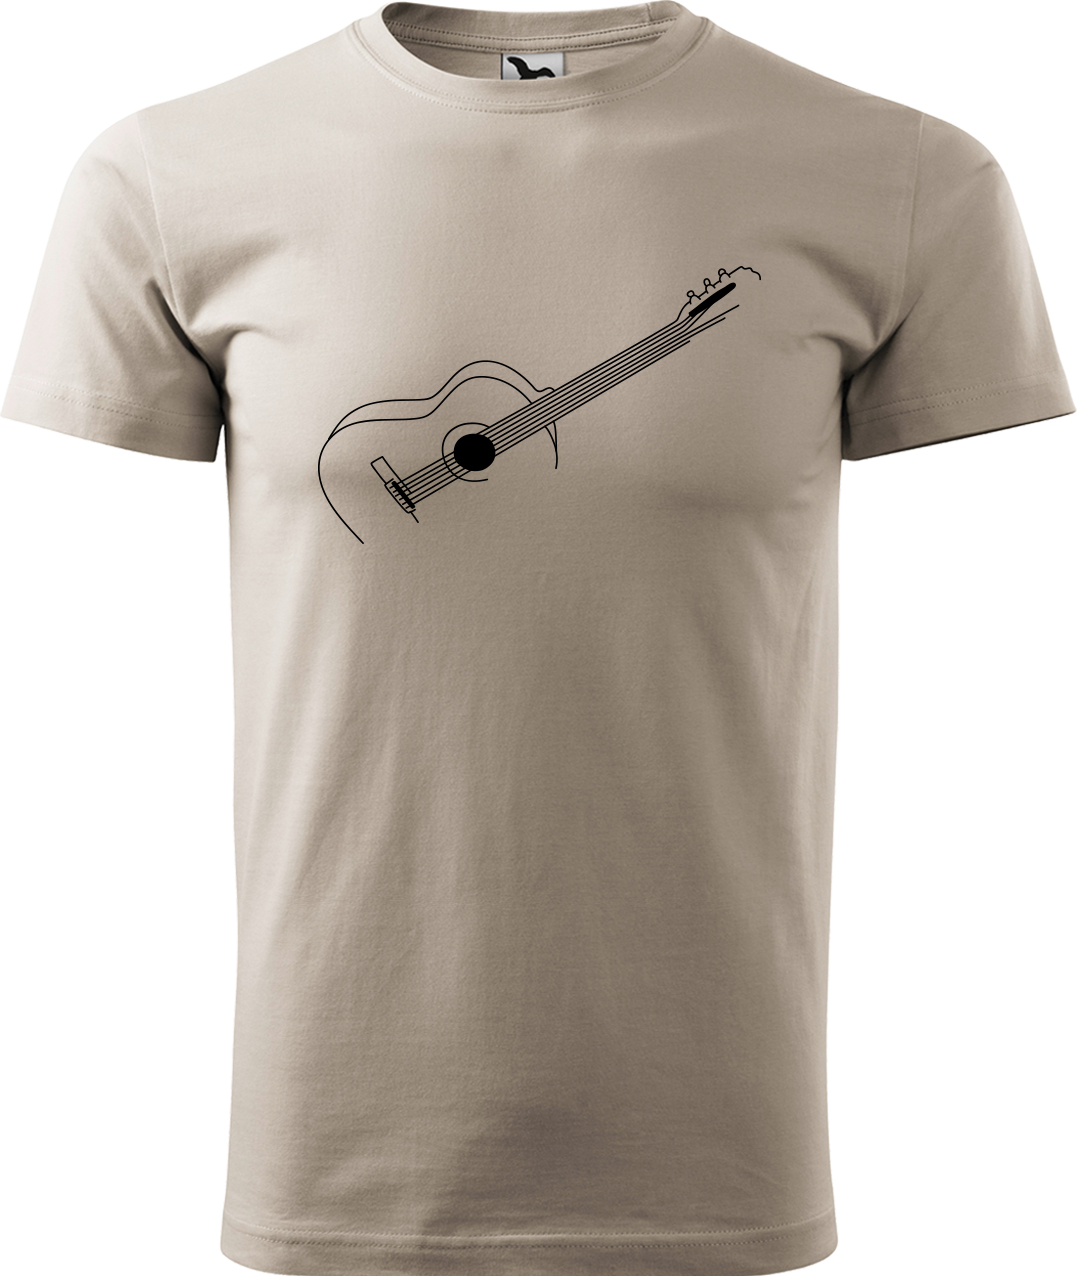 Pánské tričko s kytarou - Stylizovaná kytara Velikost: L, Barva: Ledově šedá (51), Střih: pánský